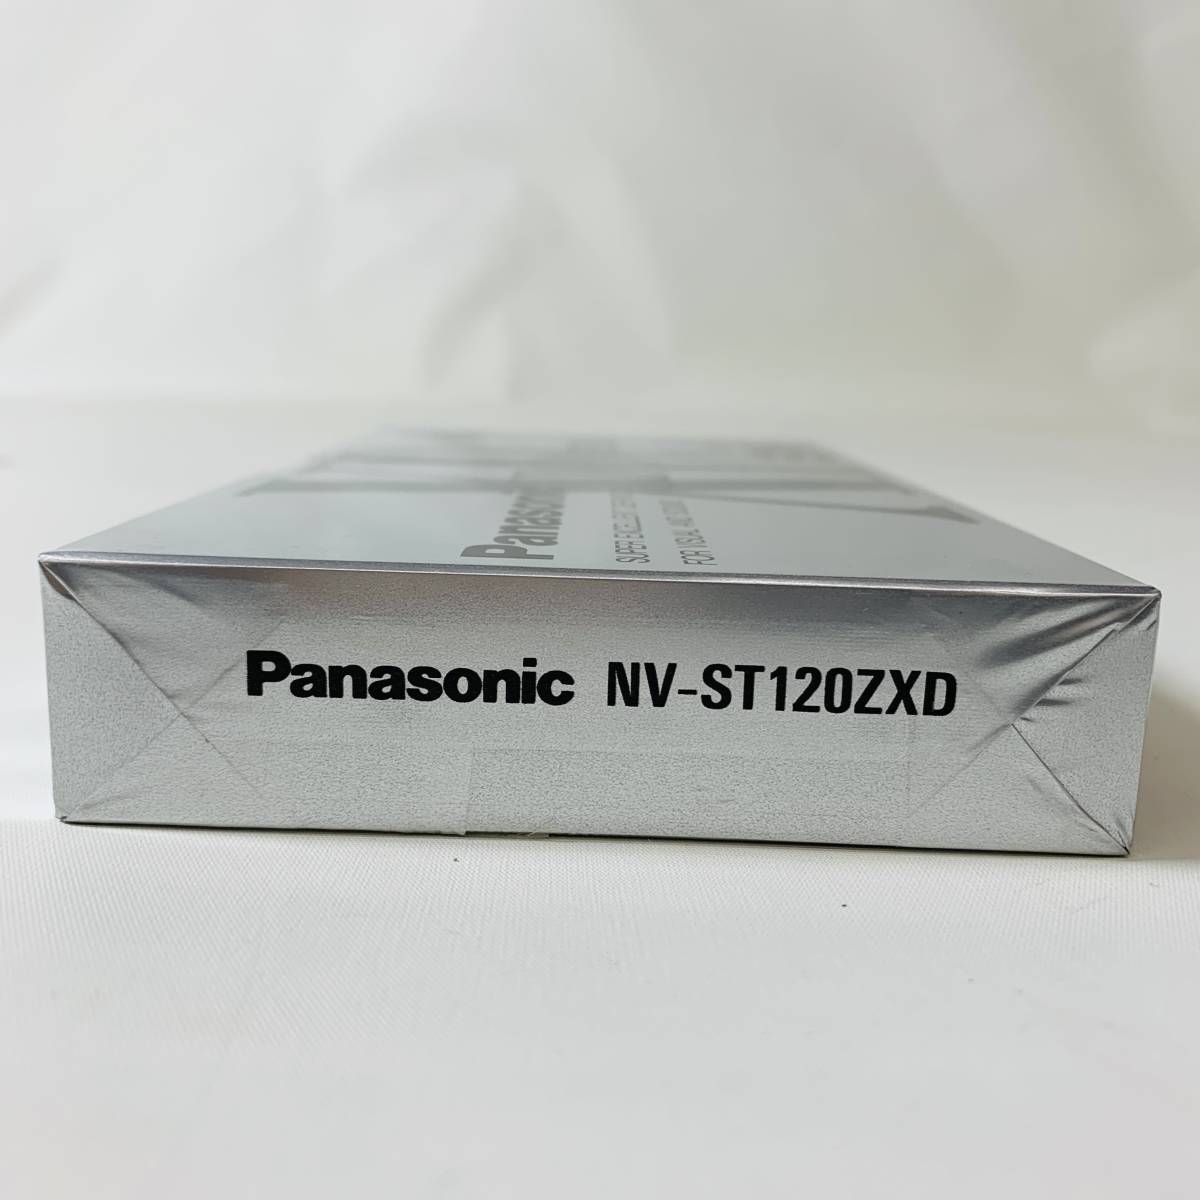 Panasonic нераспечатанный товар VHS лента комплект 120*2400010309502